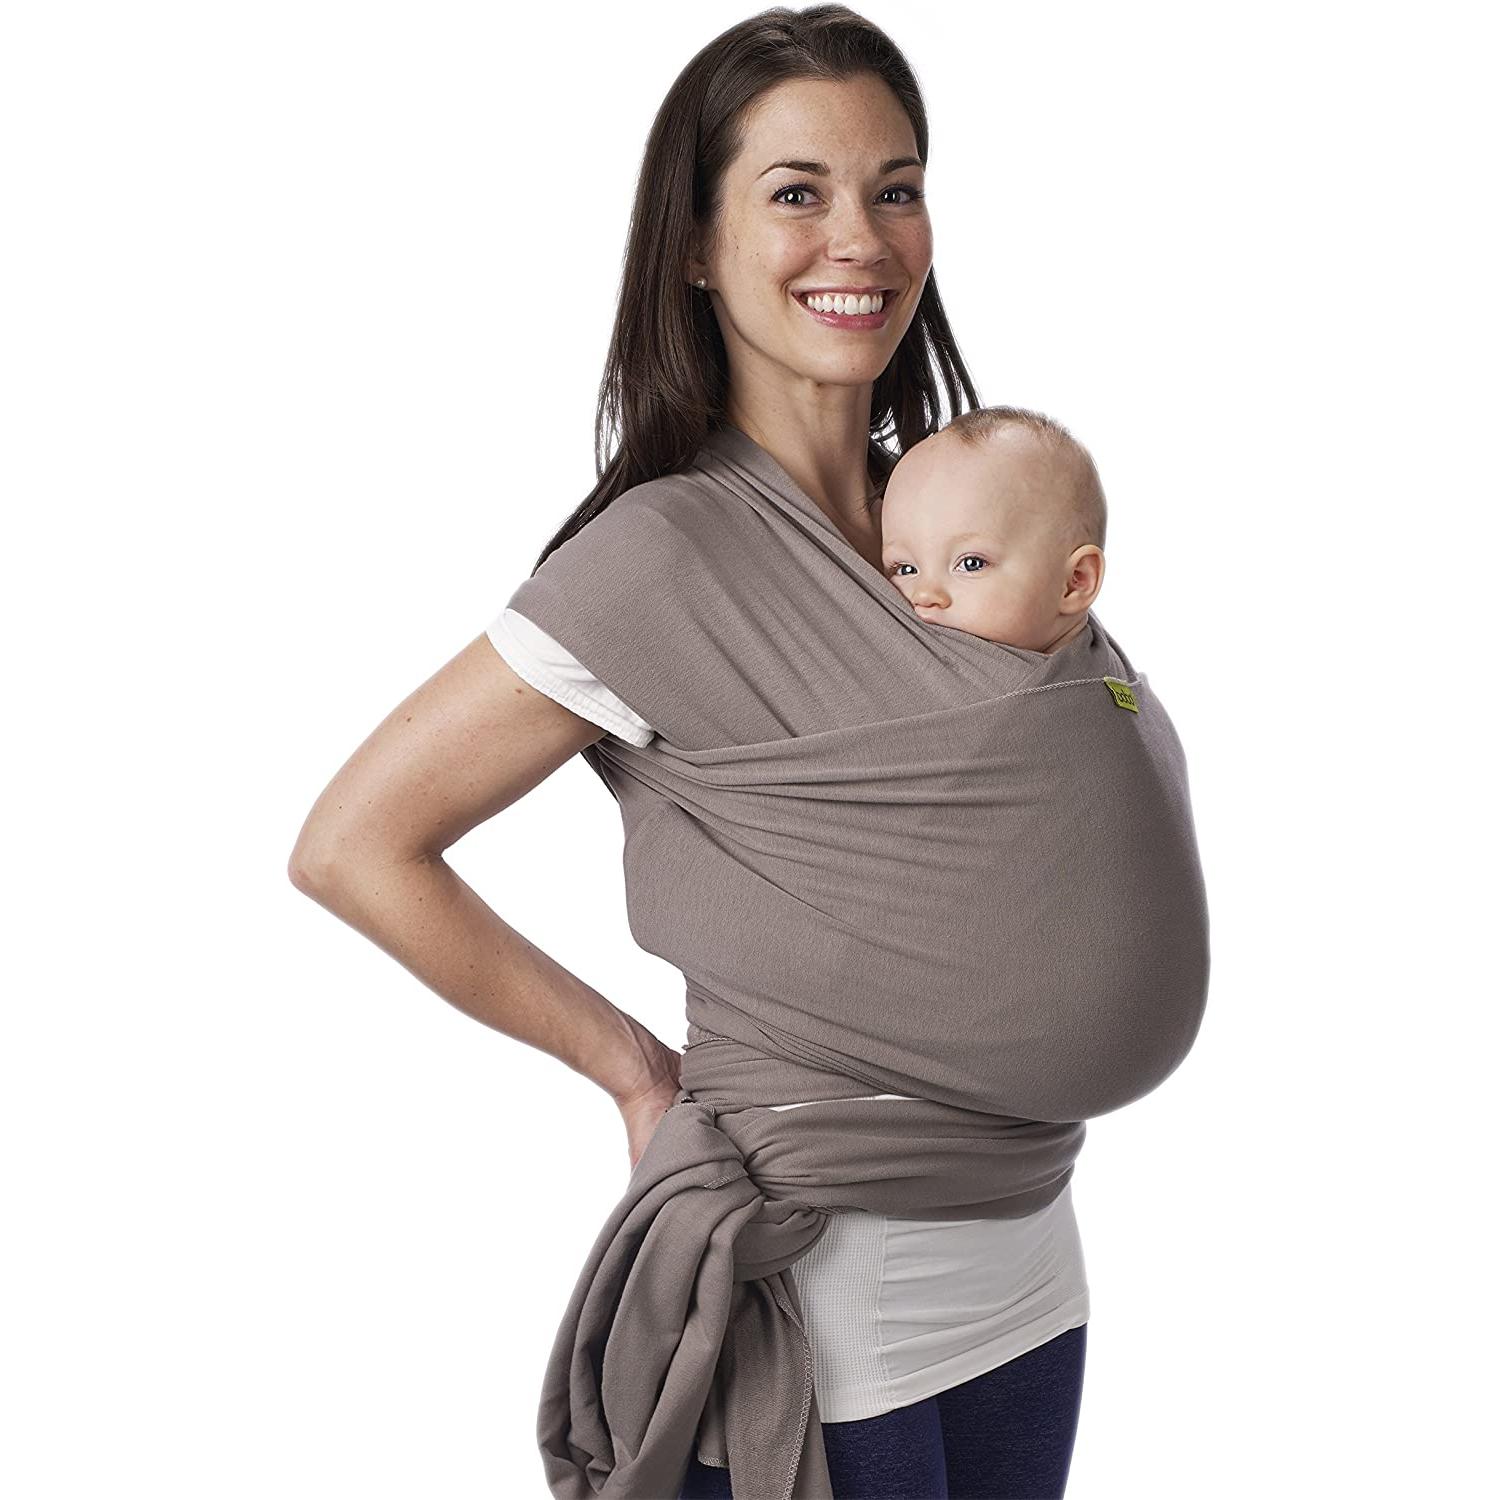 Pañuelo de porteo o mochila: ¿cuál es el mejor soporte para bebés